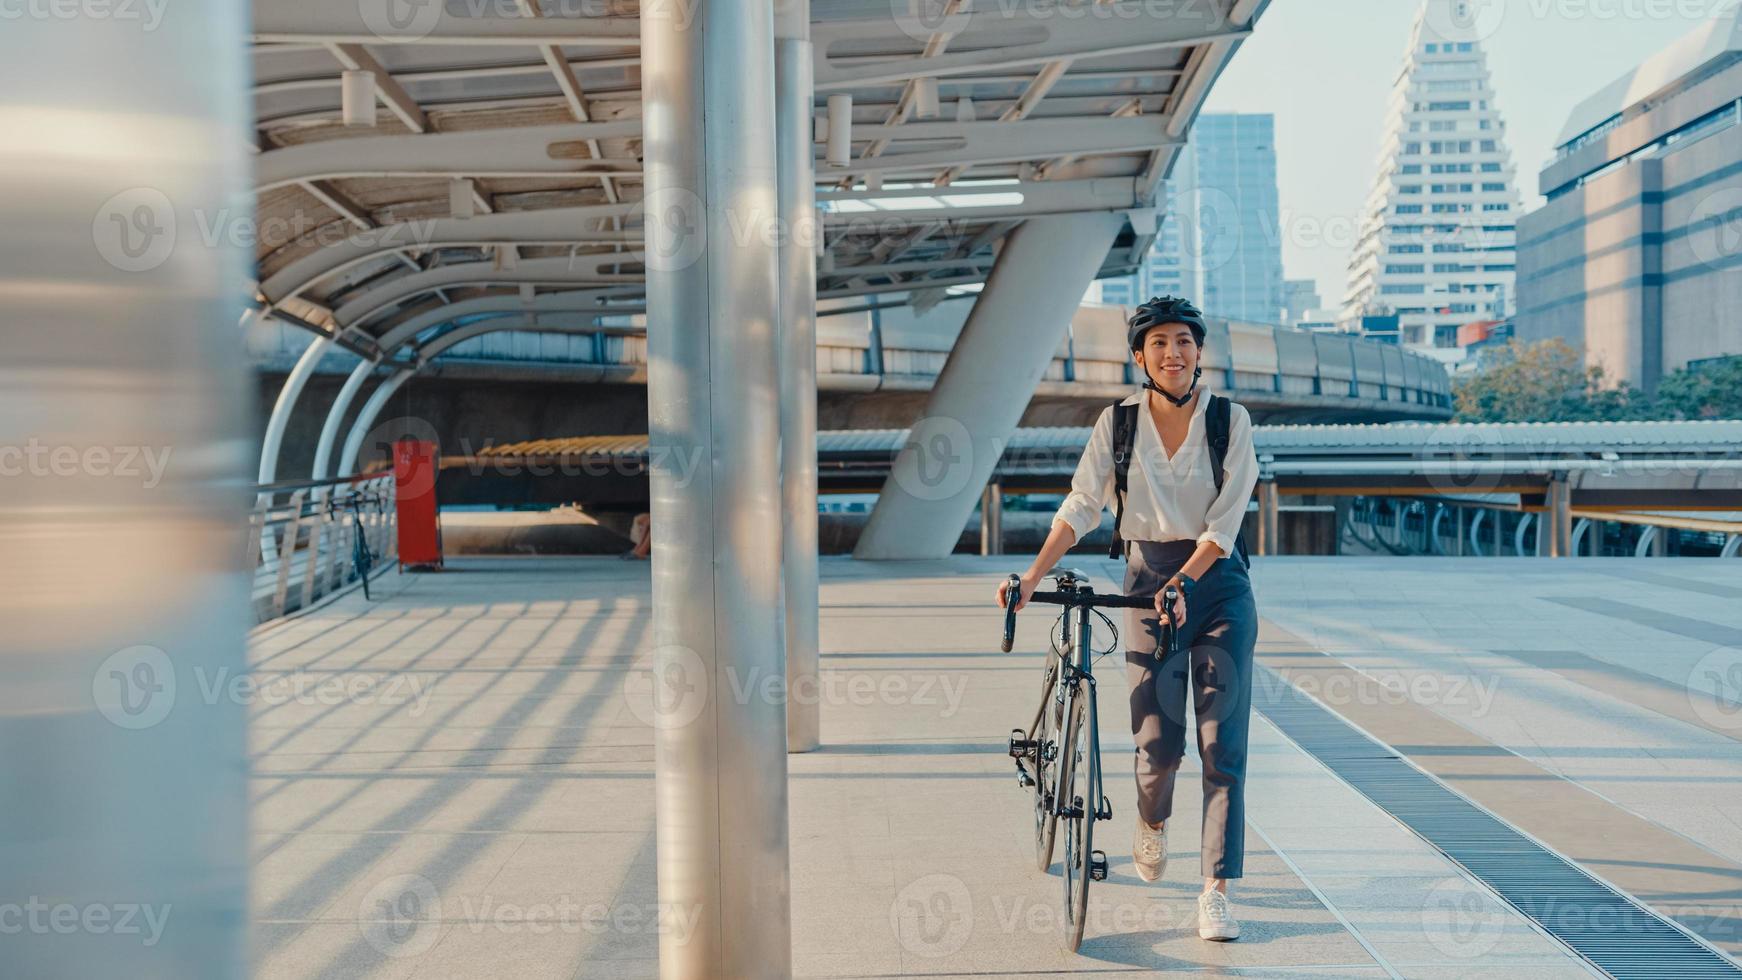 asiatische geschäftsfrau gehen im büro spazieren und lächeln tragen rucksack schauen sich um, nehmen fahrrad auf der straße um das gebäude auf einer stadtstraße. Fahrradpendeln, Pendeln mit dem Fahrrad, Geschäftspendlerkonzept. foto